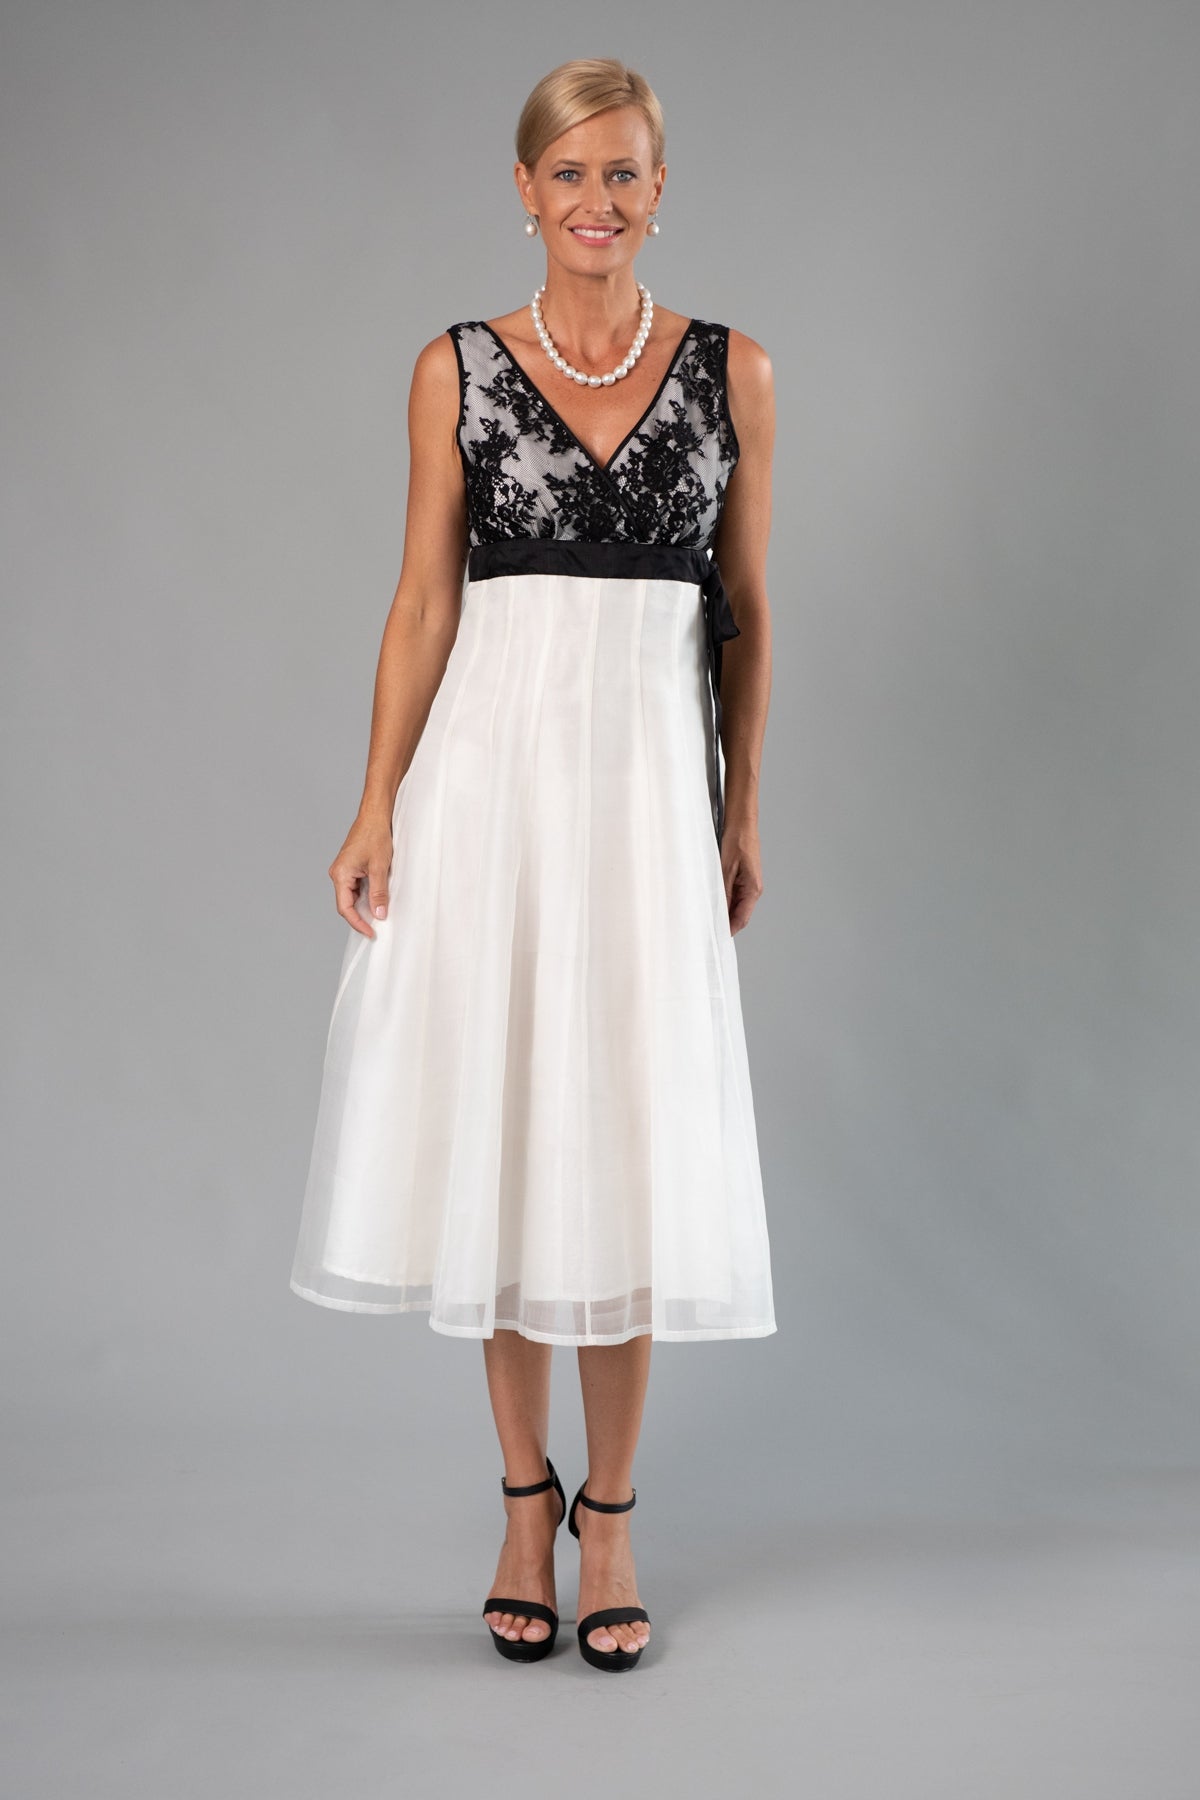 Aurelie Wedding Dress - For the Understated Bride